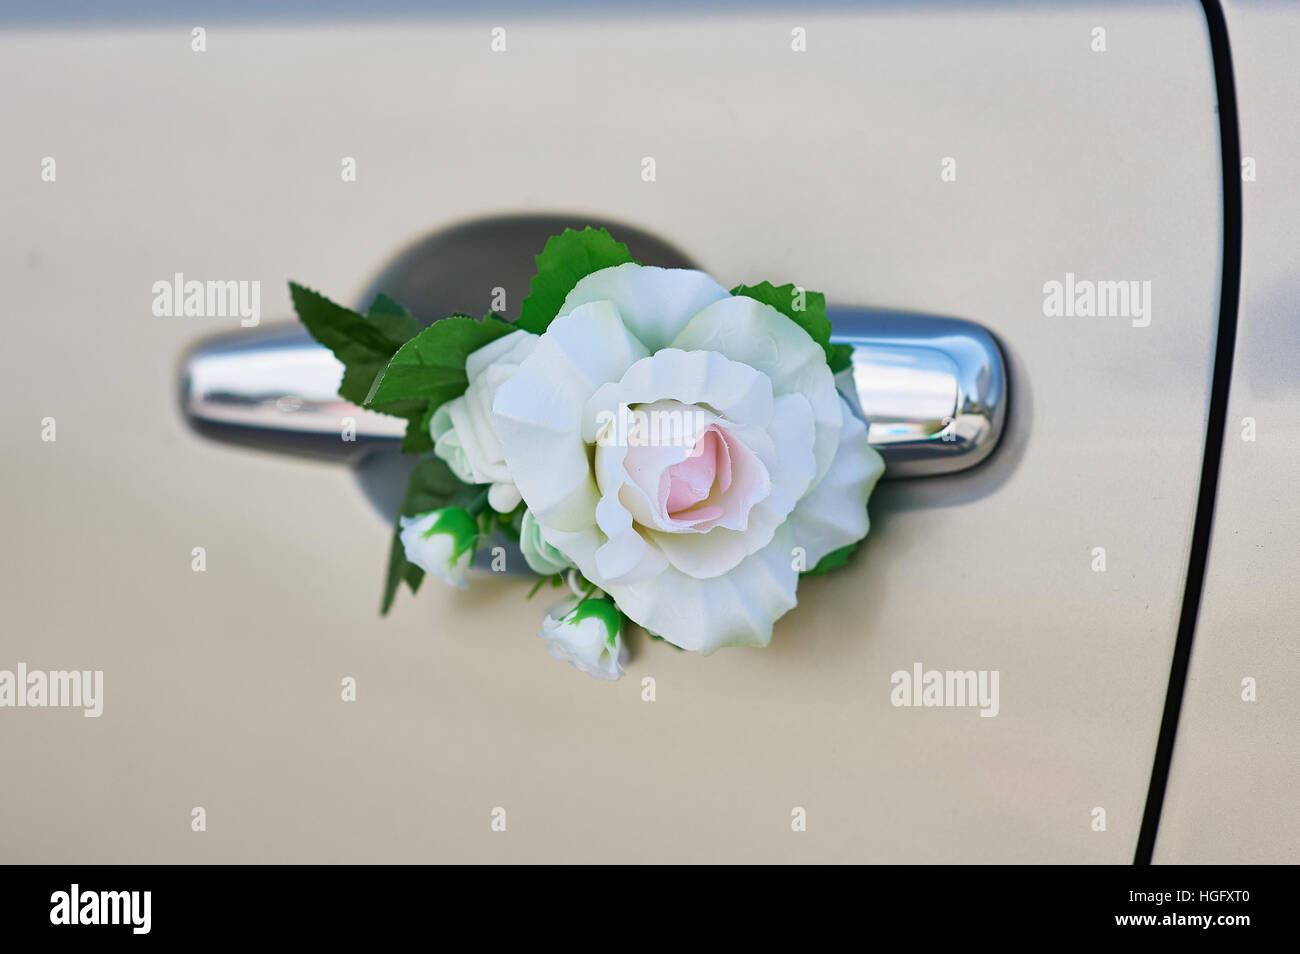 Rose blanche fleur sur la poignée d'une voiture à jour de mariage Banque D'Images